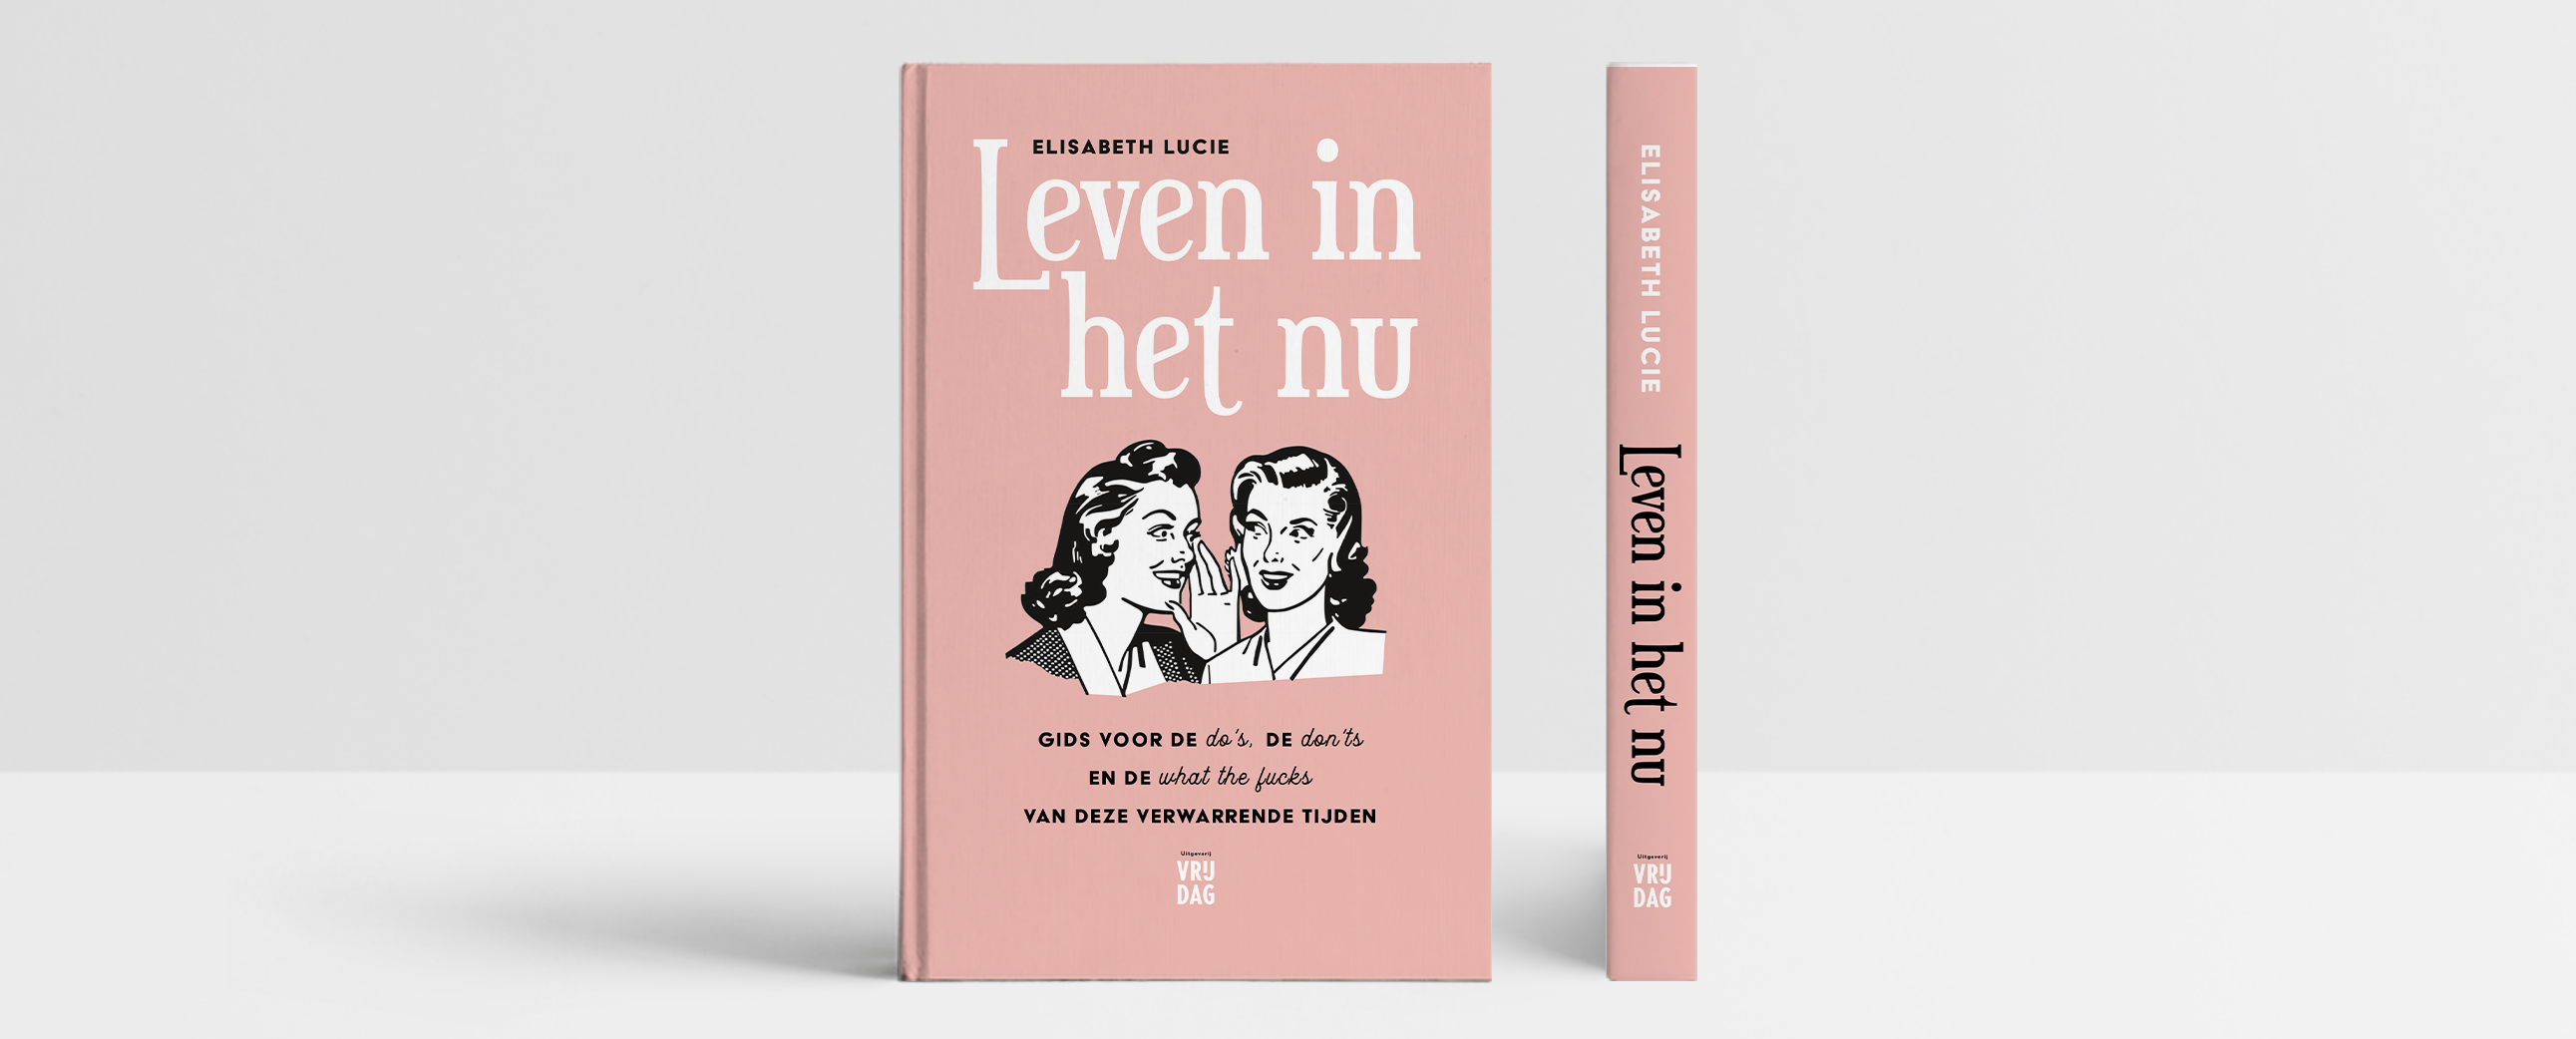 Boekcover 'Leven in het nu'- Elisabeth Lucie - Vera Post